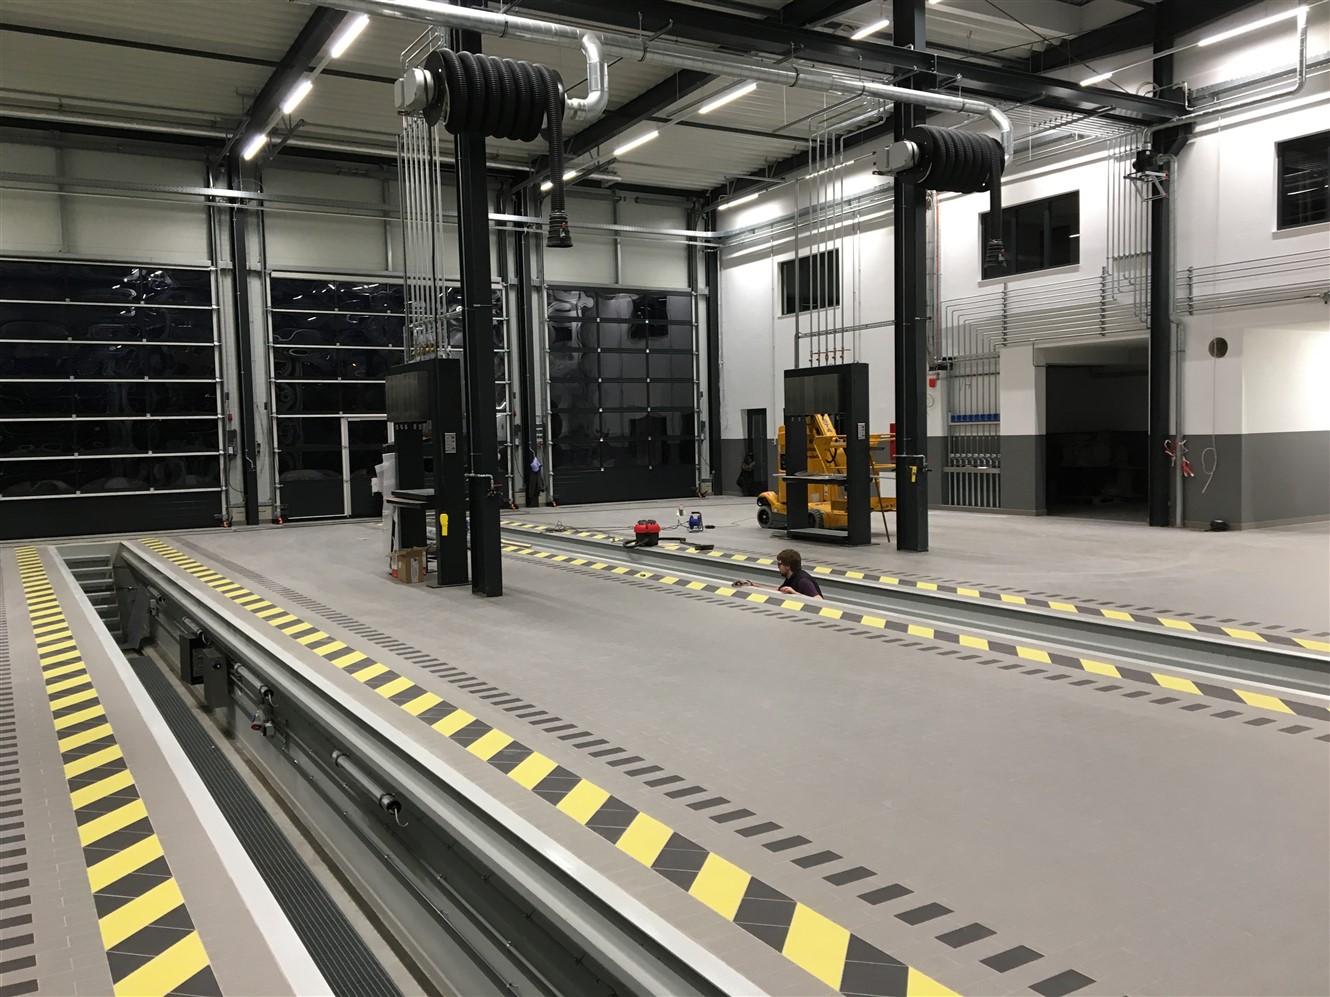 KFZ Grube - Truckcon bietet erstklassige Werkstattausstattung